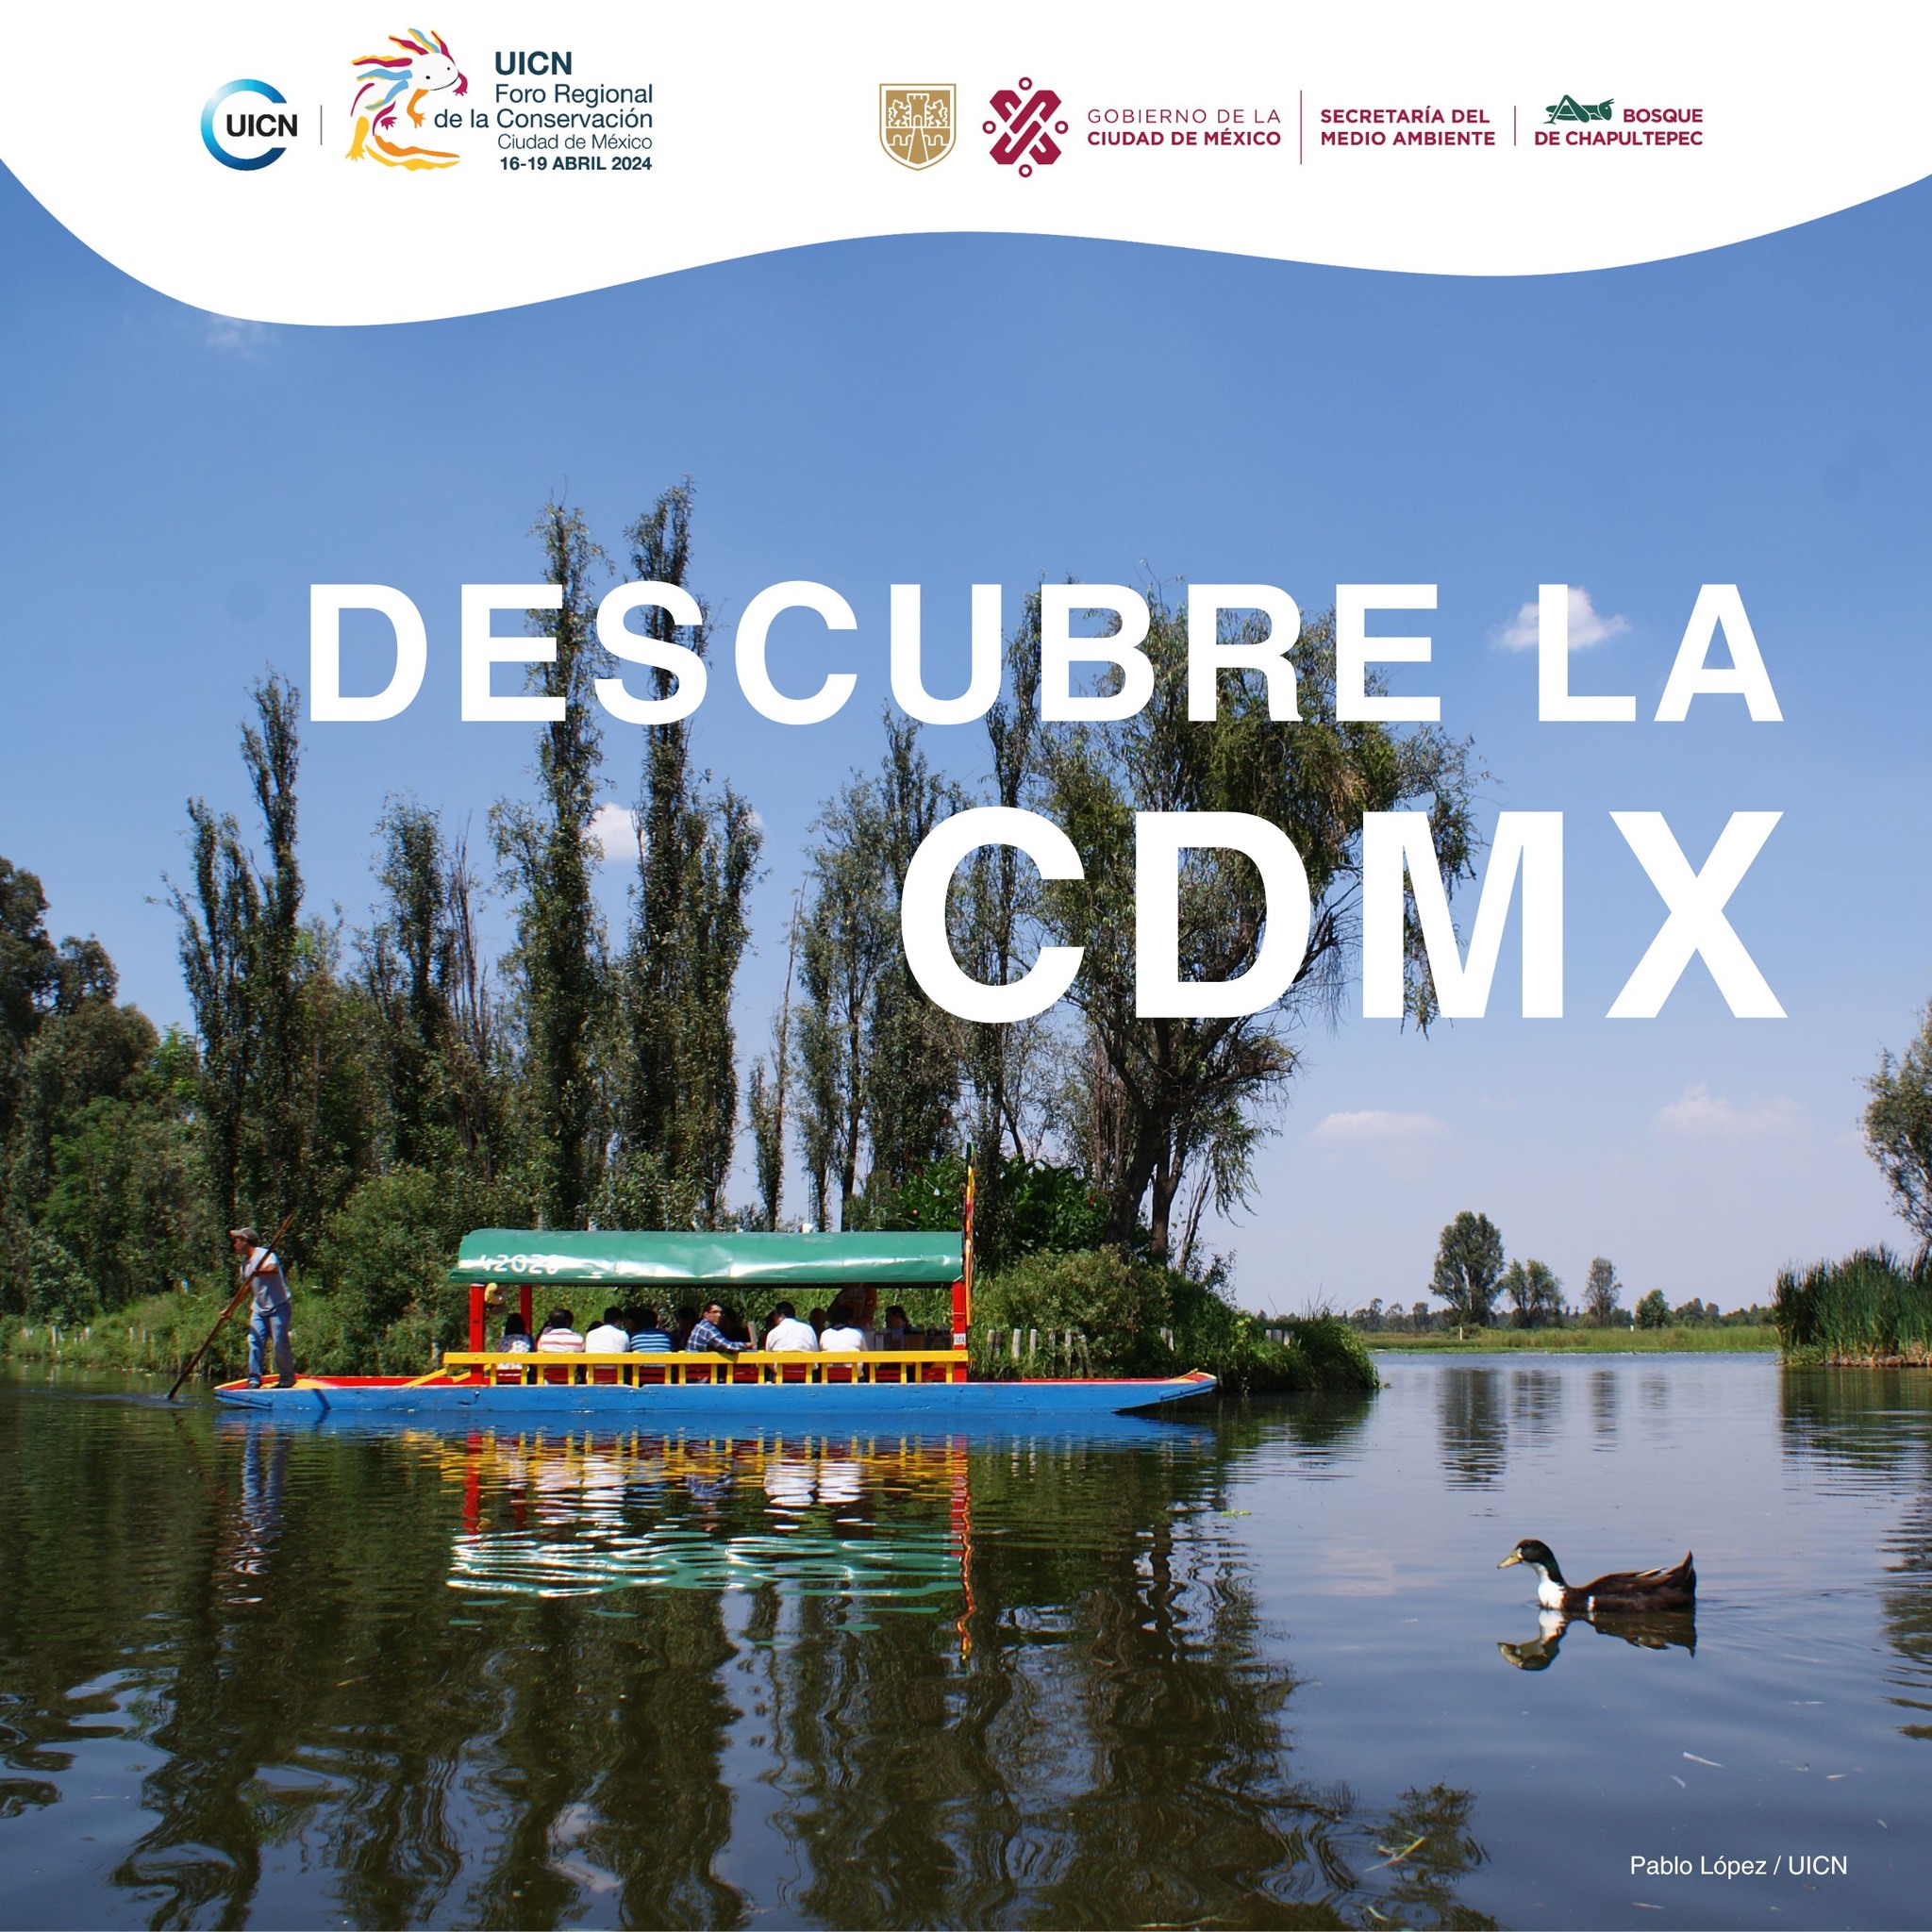 ¡Descubre la Ciudad de México! Sede del Foro Regional de la Conservación